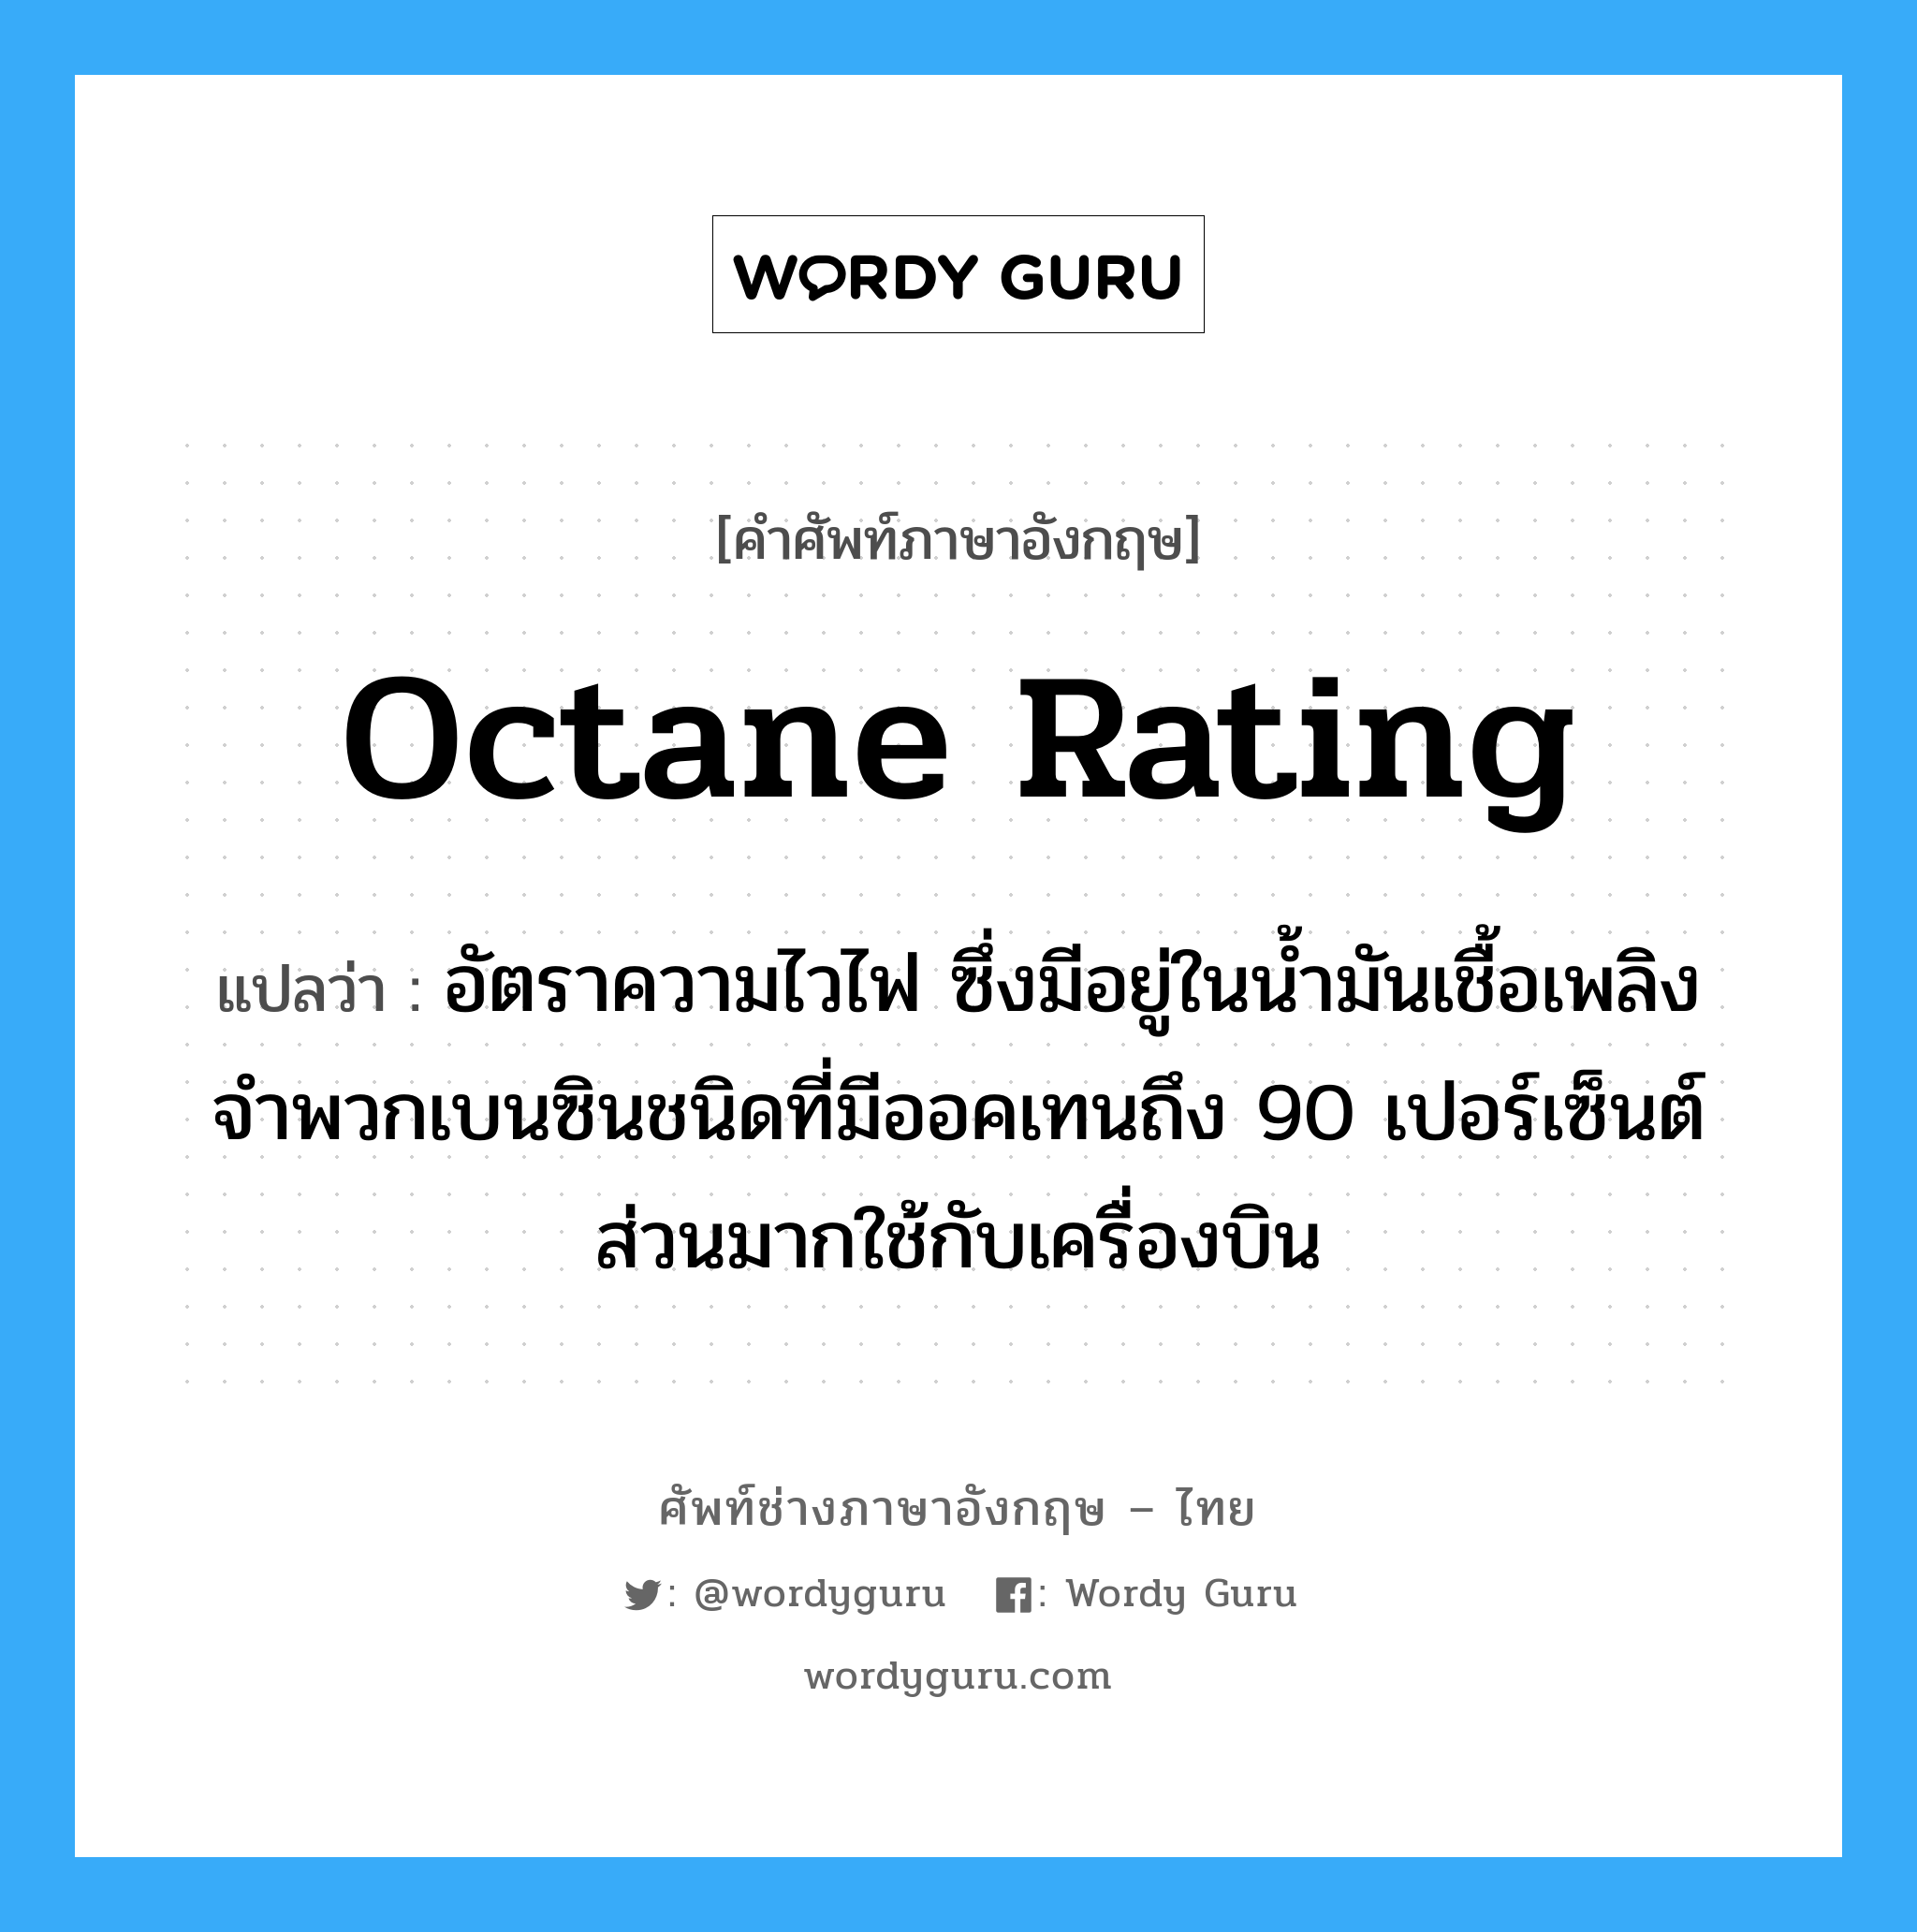 octane rating แปลว่า?, คำศัพท์ช่างภาษาอังกฤษ - ไทย octane rating คำศัพท์ภาษาอังกฤษ octane rating แปลว่า อัตราความไวไฟ ซึ่งมีอยู่ในน้ำมันเชื้อเพลิง จำพวกเบนซินชนิดที่มีออคเทนถึง 90 เปอร์เซ็นต์ ส่วนมากใช้กับเครื่องบิน